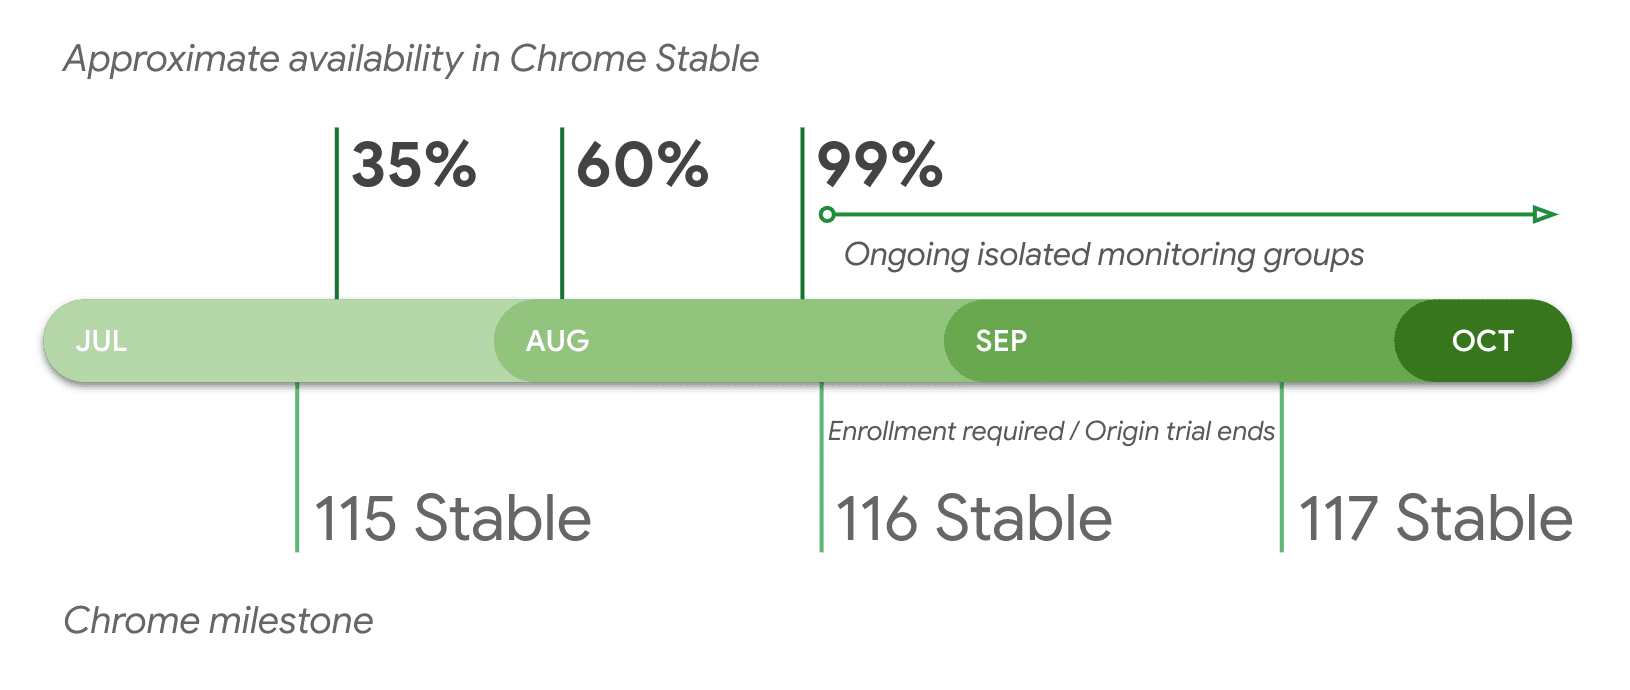 Perkiraan ketersediaan di Chrome Stabil berdasarkan versi.